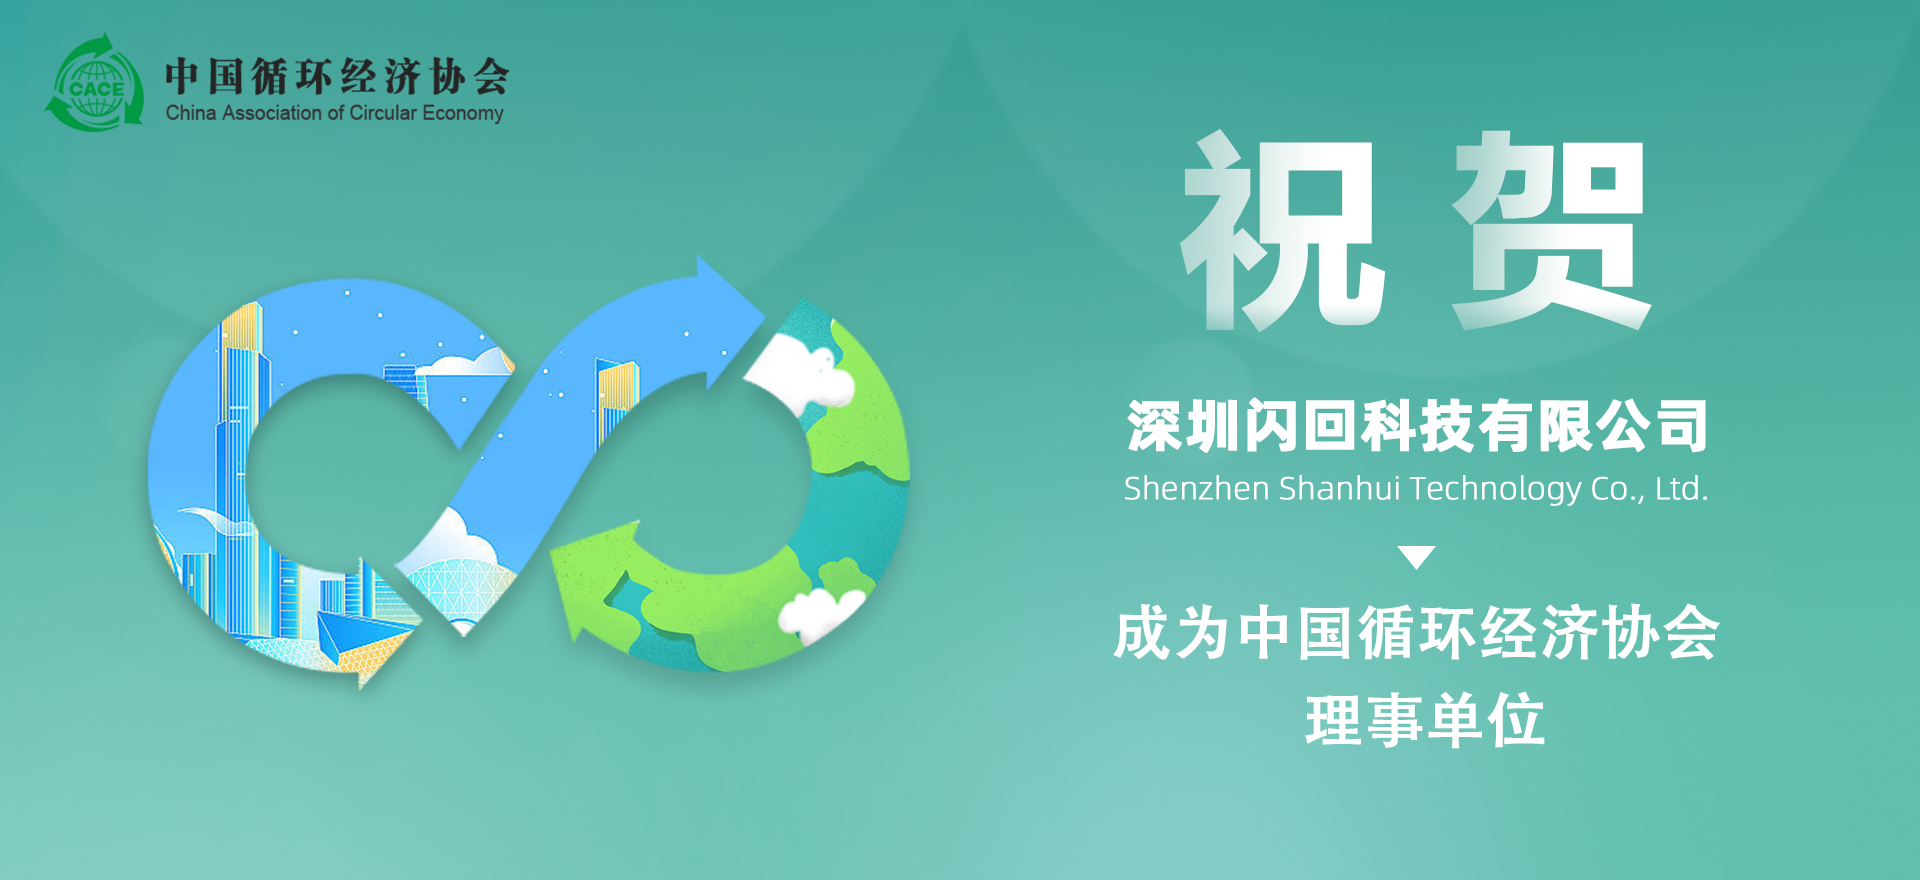 中国循环经济协会